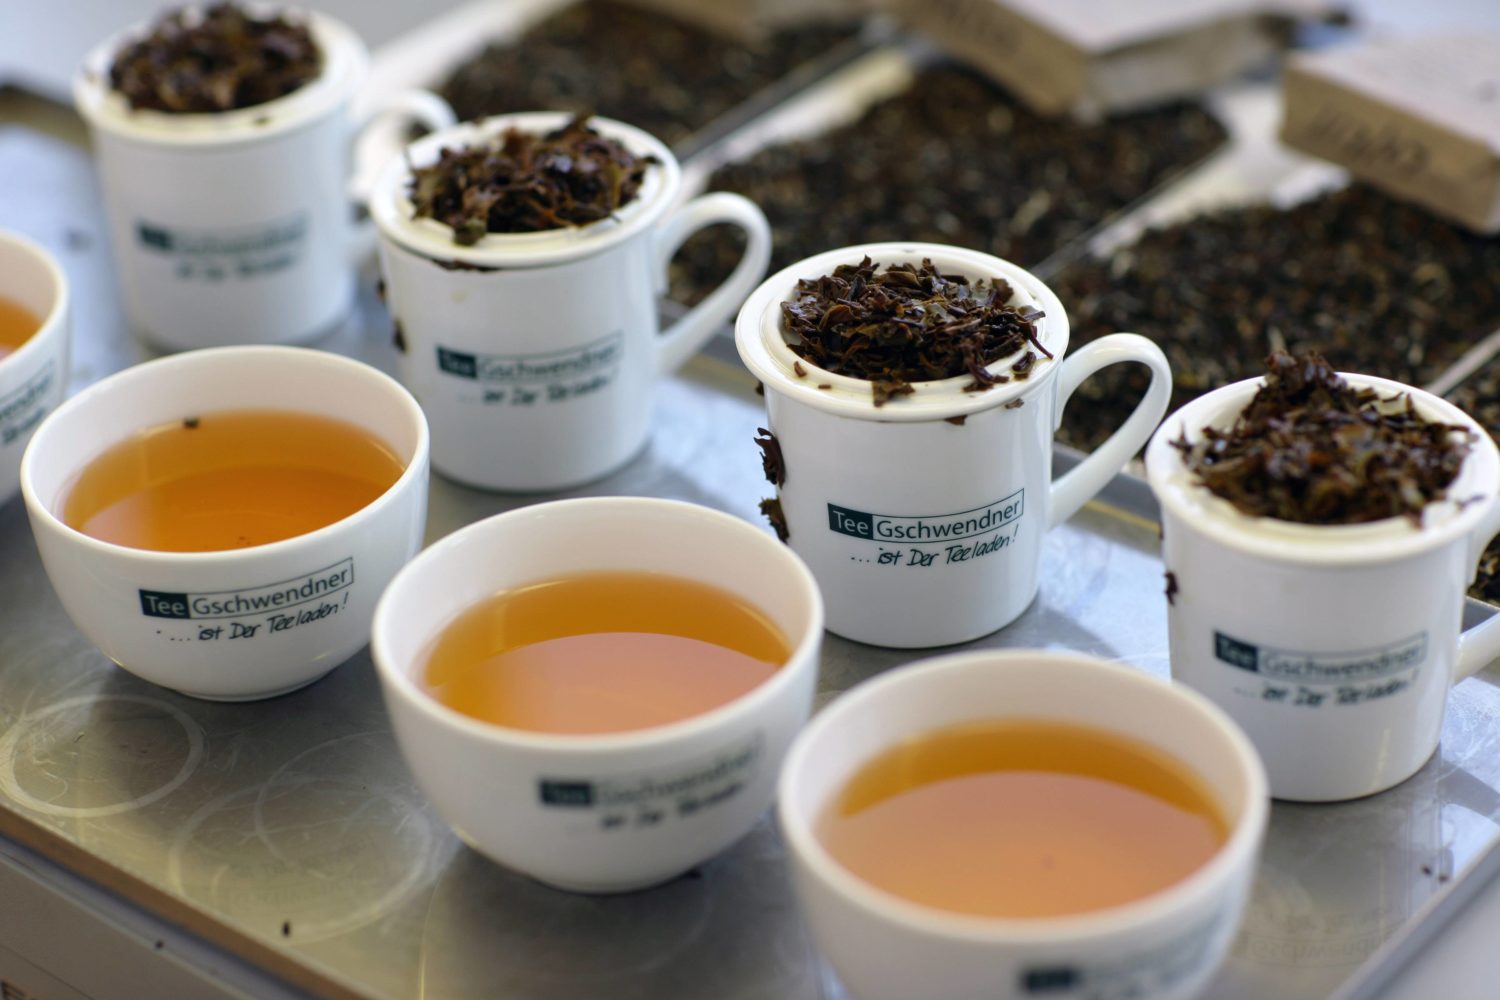 Schlossstraße Über 40 Jahre Tee-Tradition: Bei Tee Gschwendner findet man neben klassischen Kräuter- und Früchtetees internationale Spezialitäten.